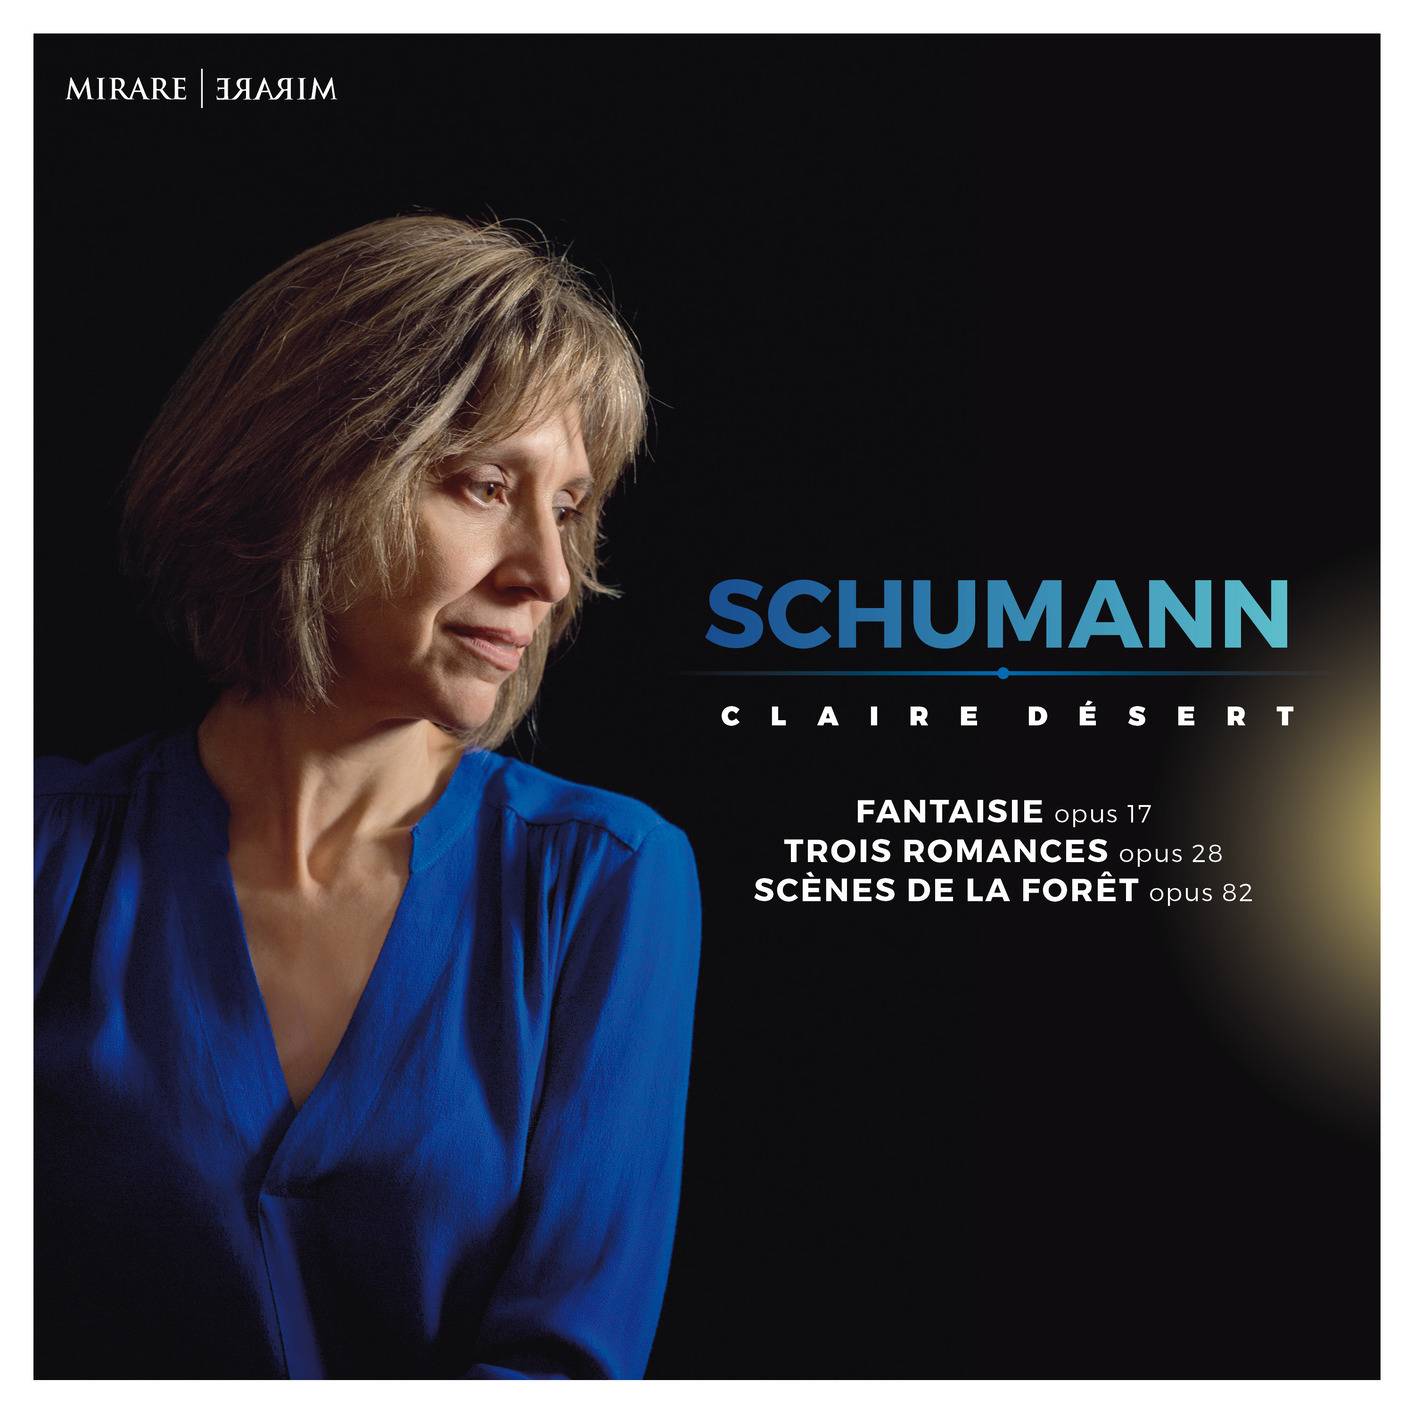 Claire Desert - Schumann (2018) [FLAC 24bit/96kHz]